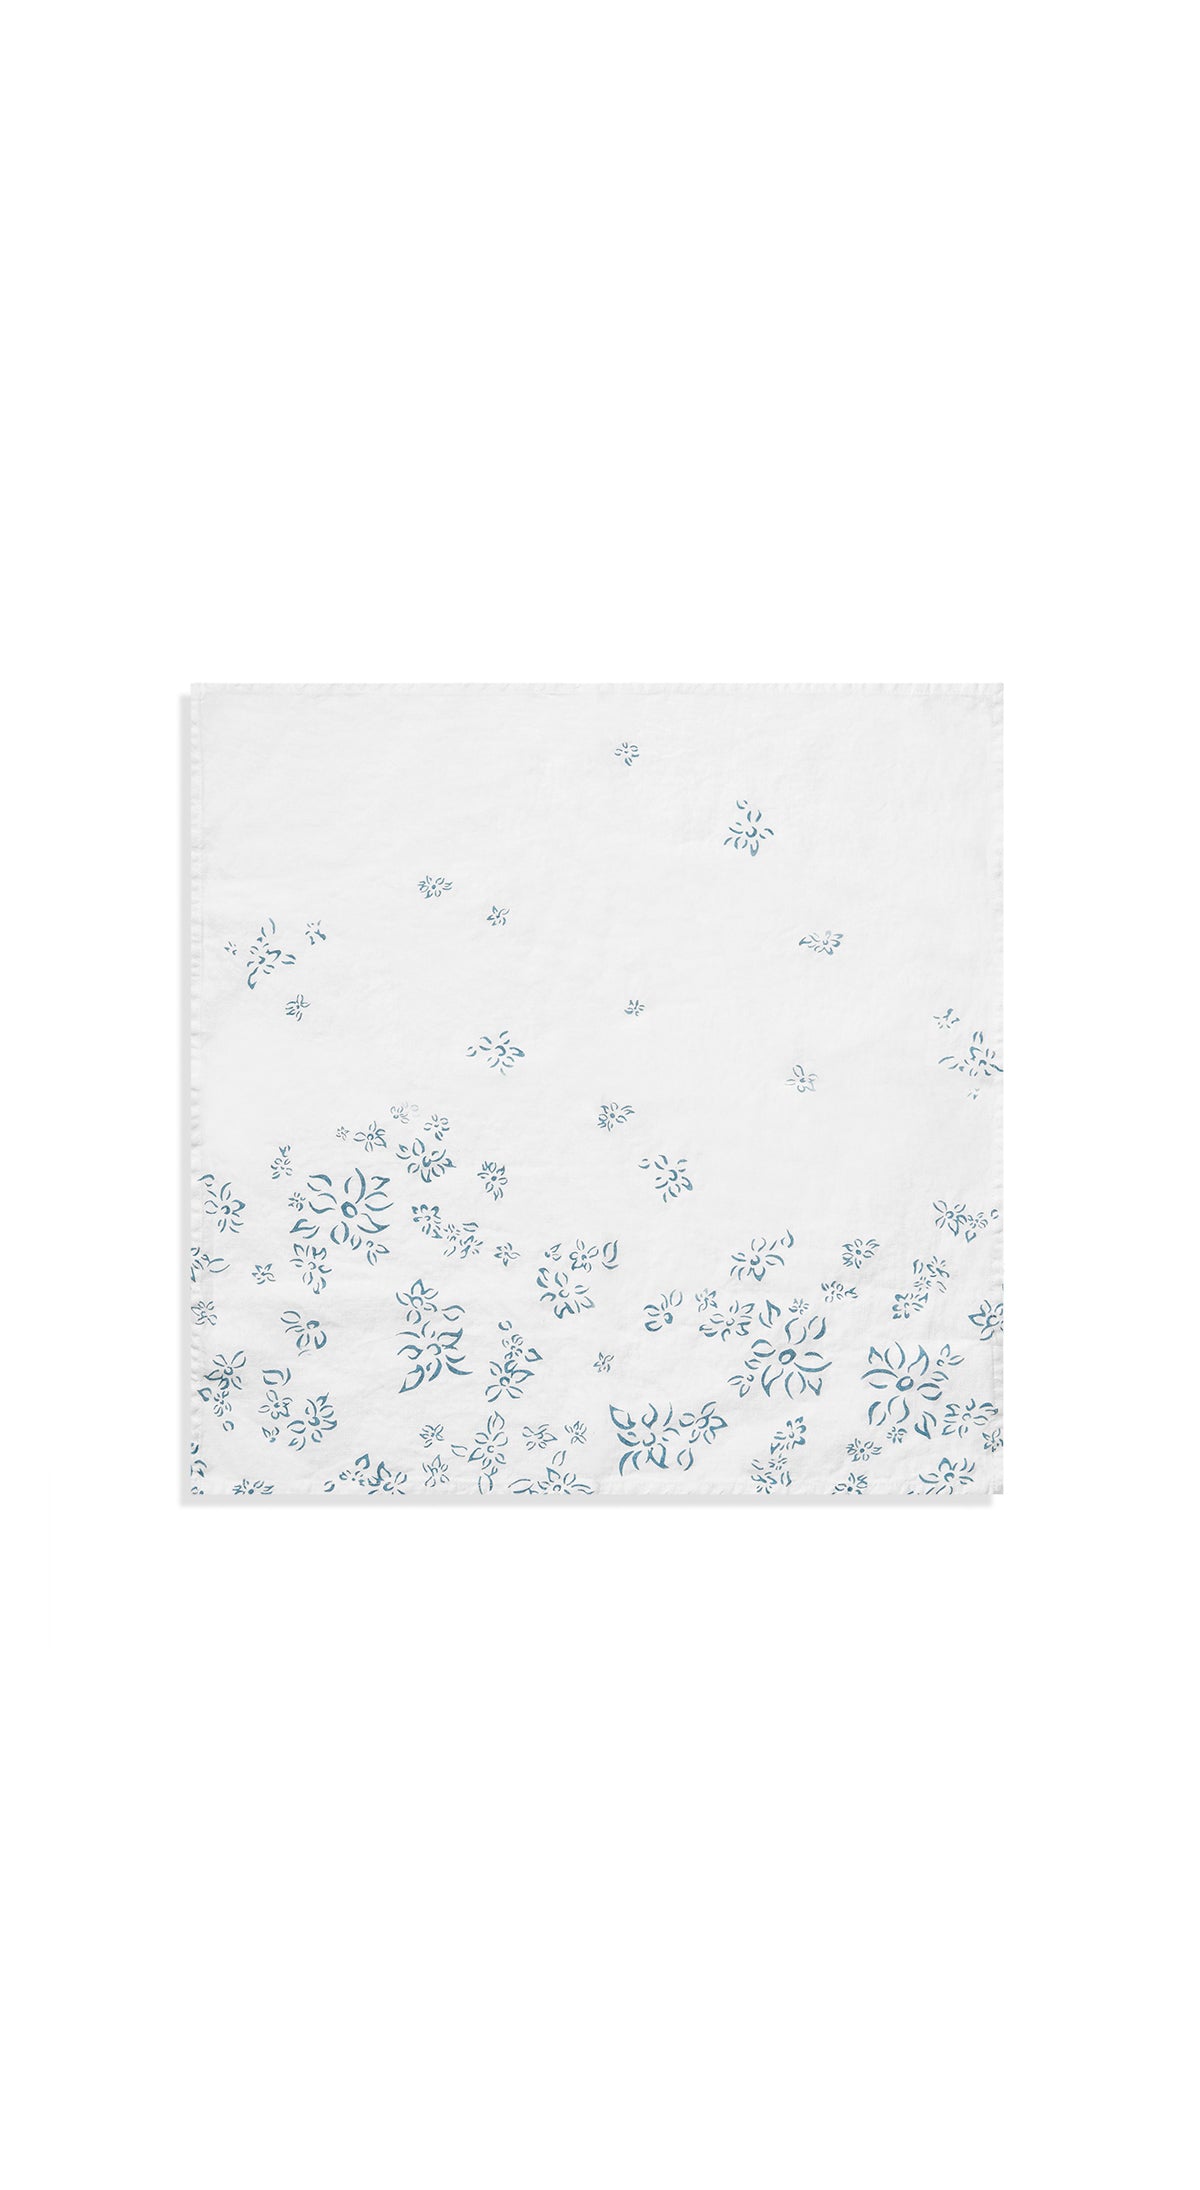 Bernadette's Falling Flower Linen Napkin in Light Blue, 50x50cm